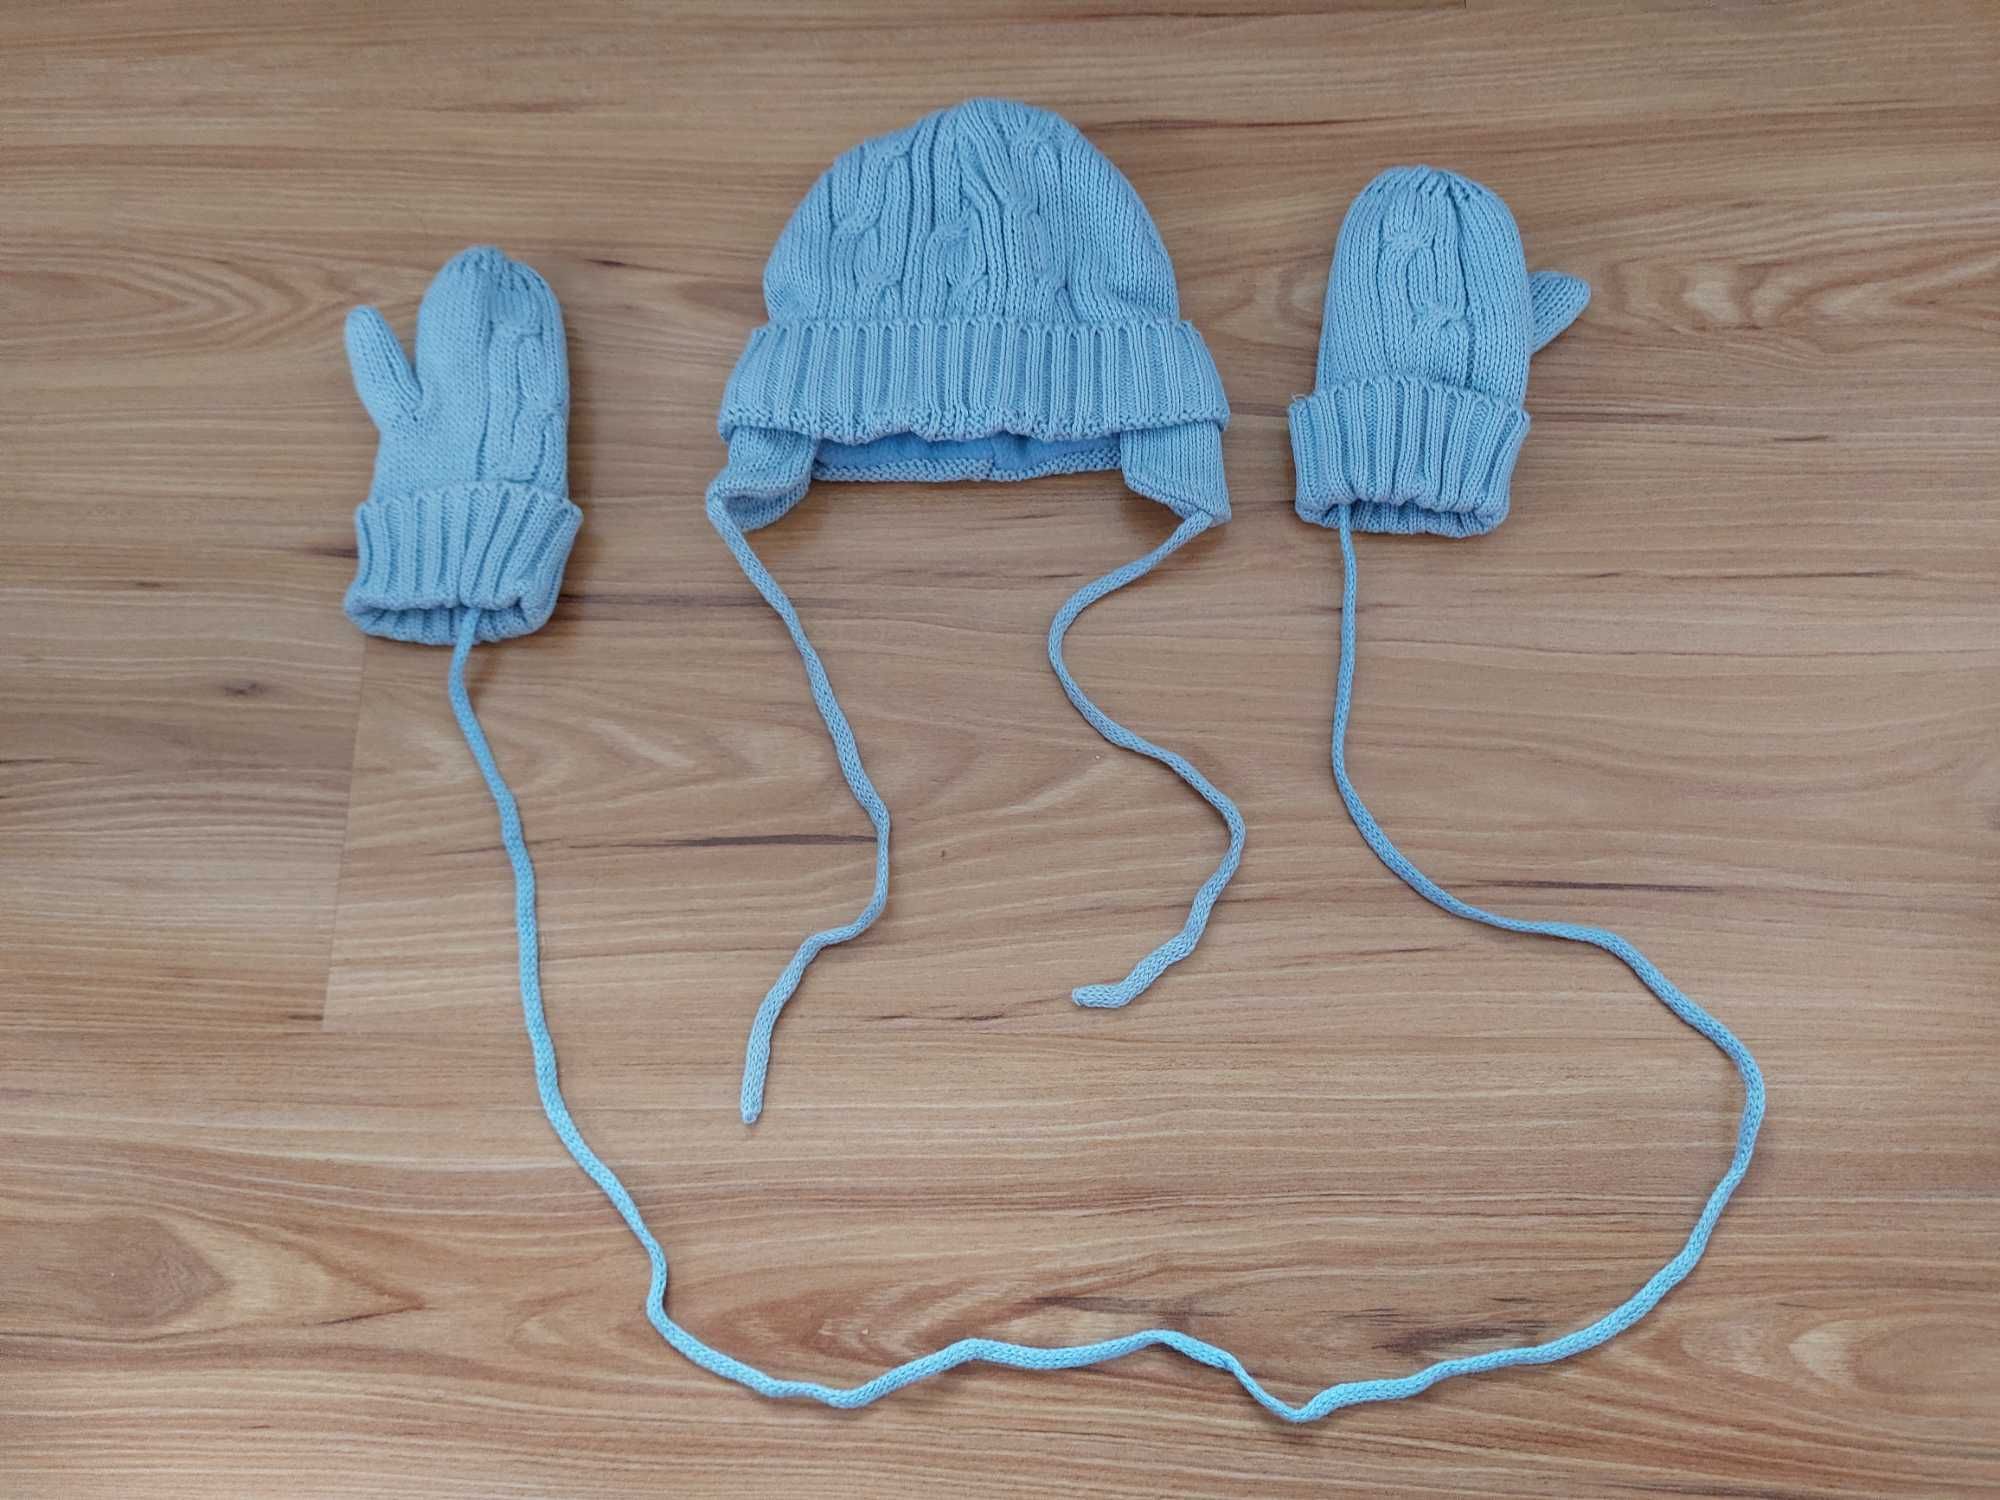 Błękitny komplet czapka + rękawiczki z jednym palcem, nowe